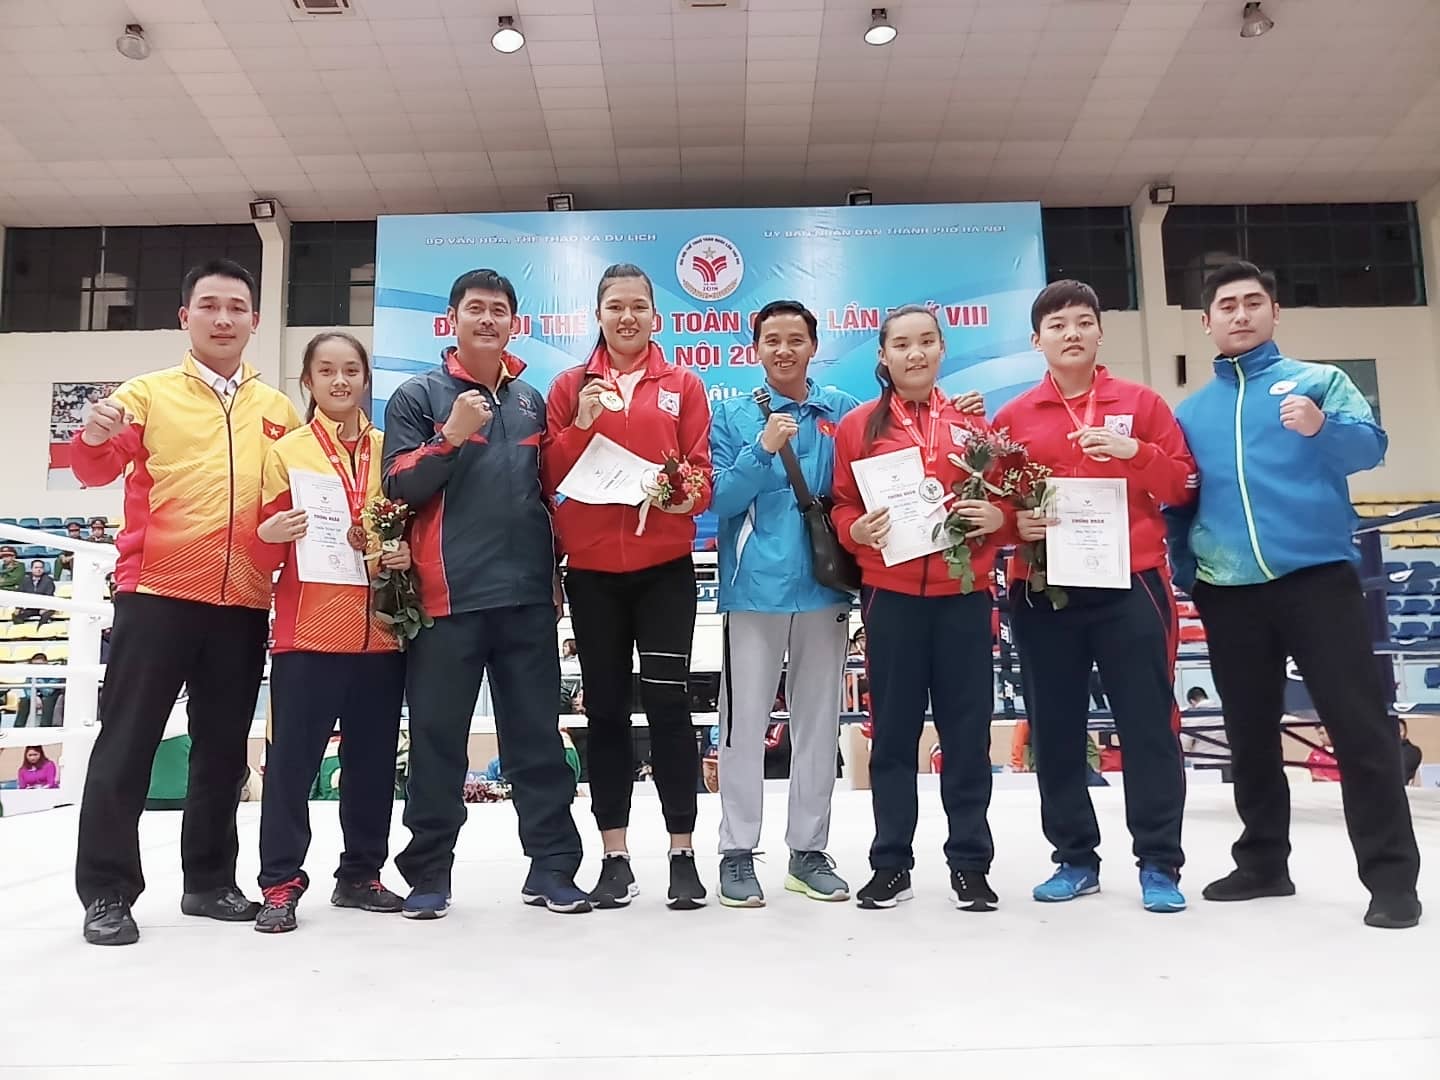 VĐV Trần Thị Oanh Nhi (thứ 4 từ trái sang) đã mang về tấm HCV đầu tiên cho Đoàn Thể thao Tiền Giang.